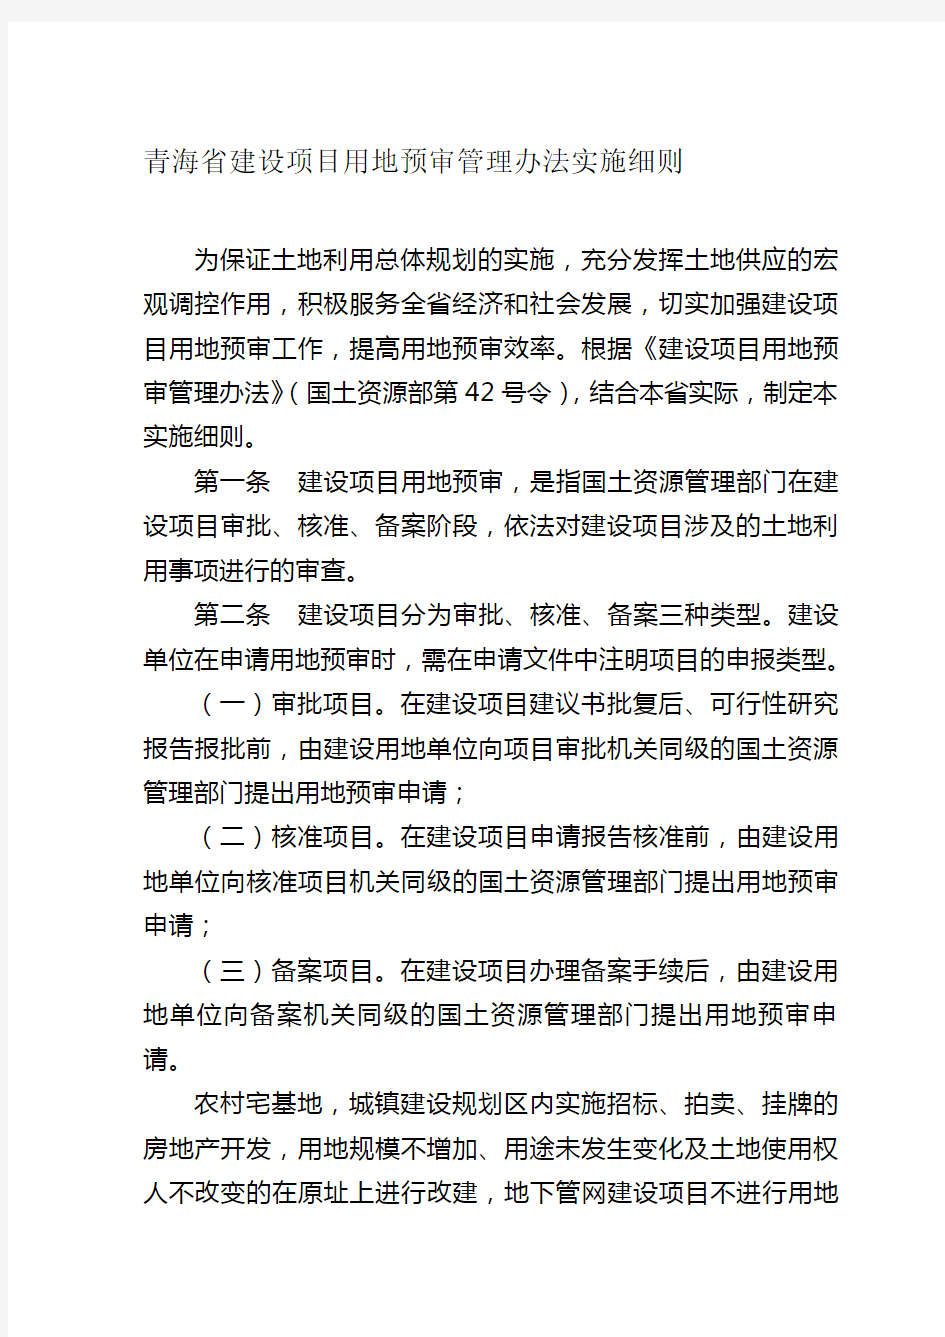 青海省建设项目用地预审管理办法实施细则